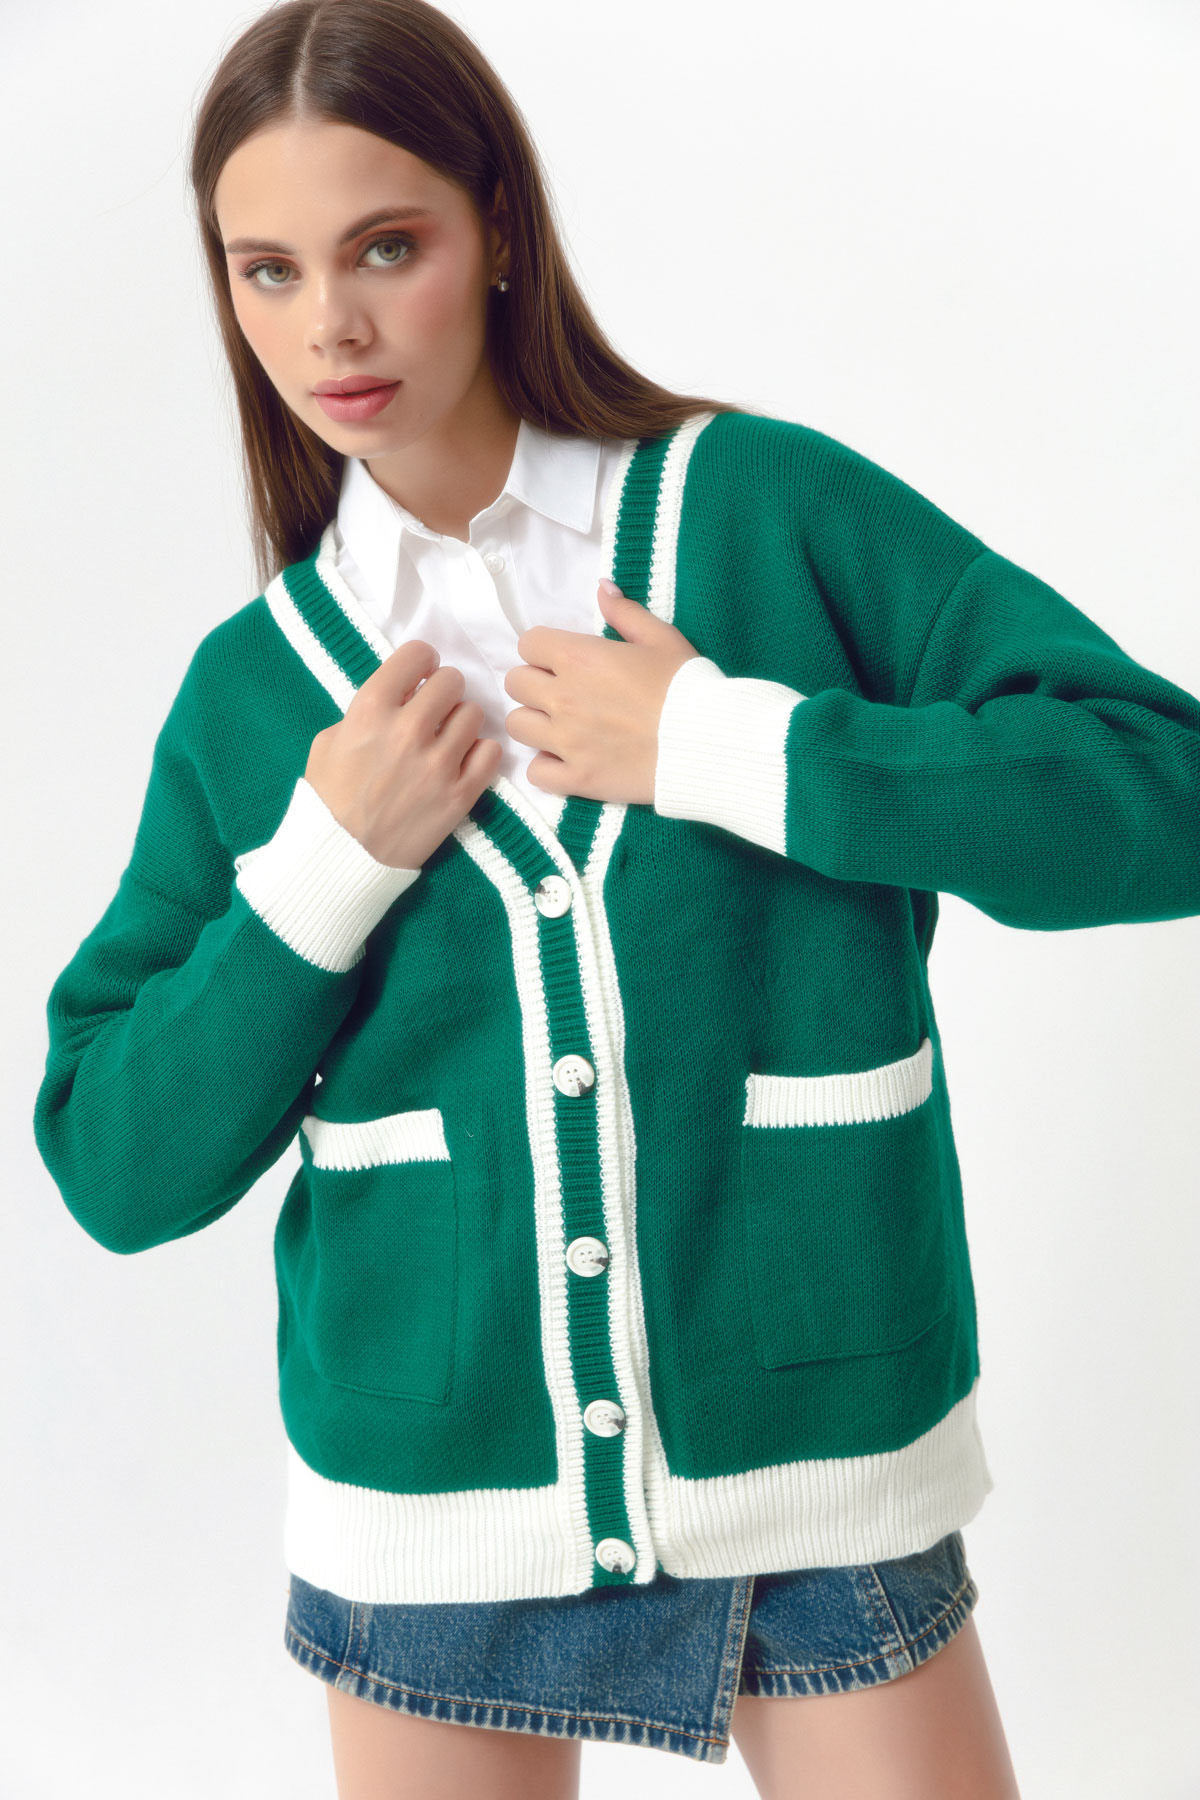 Women's Emerald Green Pocket Detailed Knitwear Cardigan